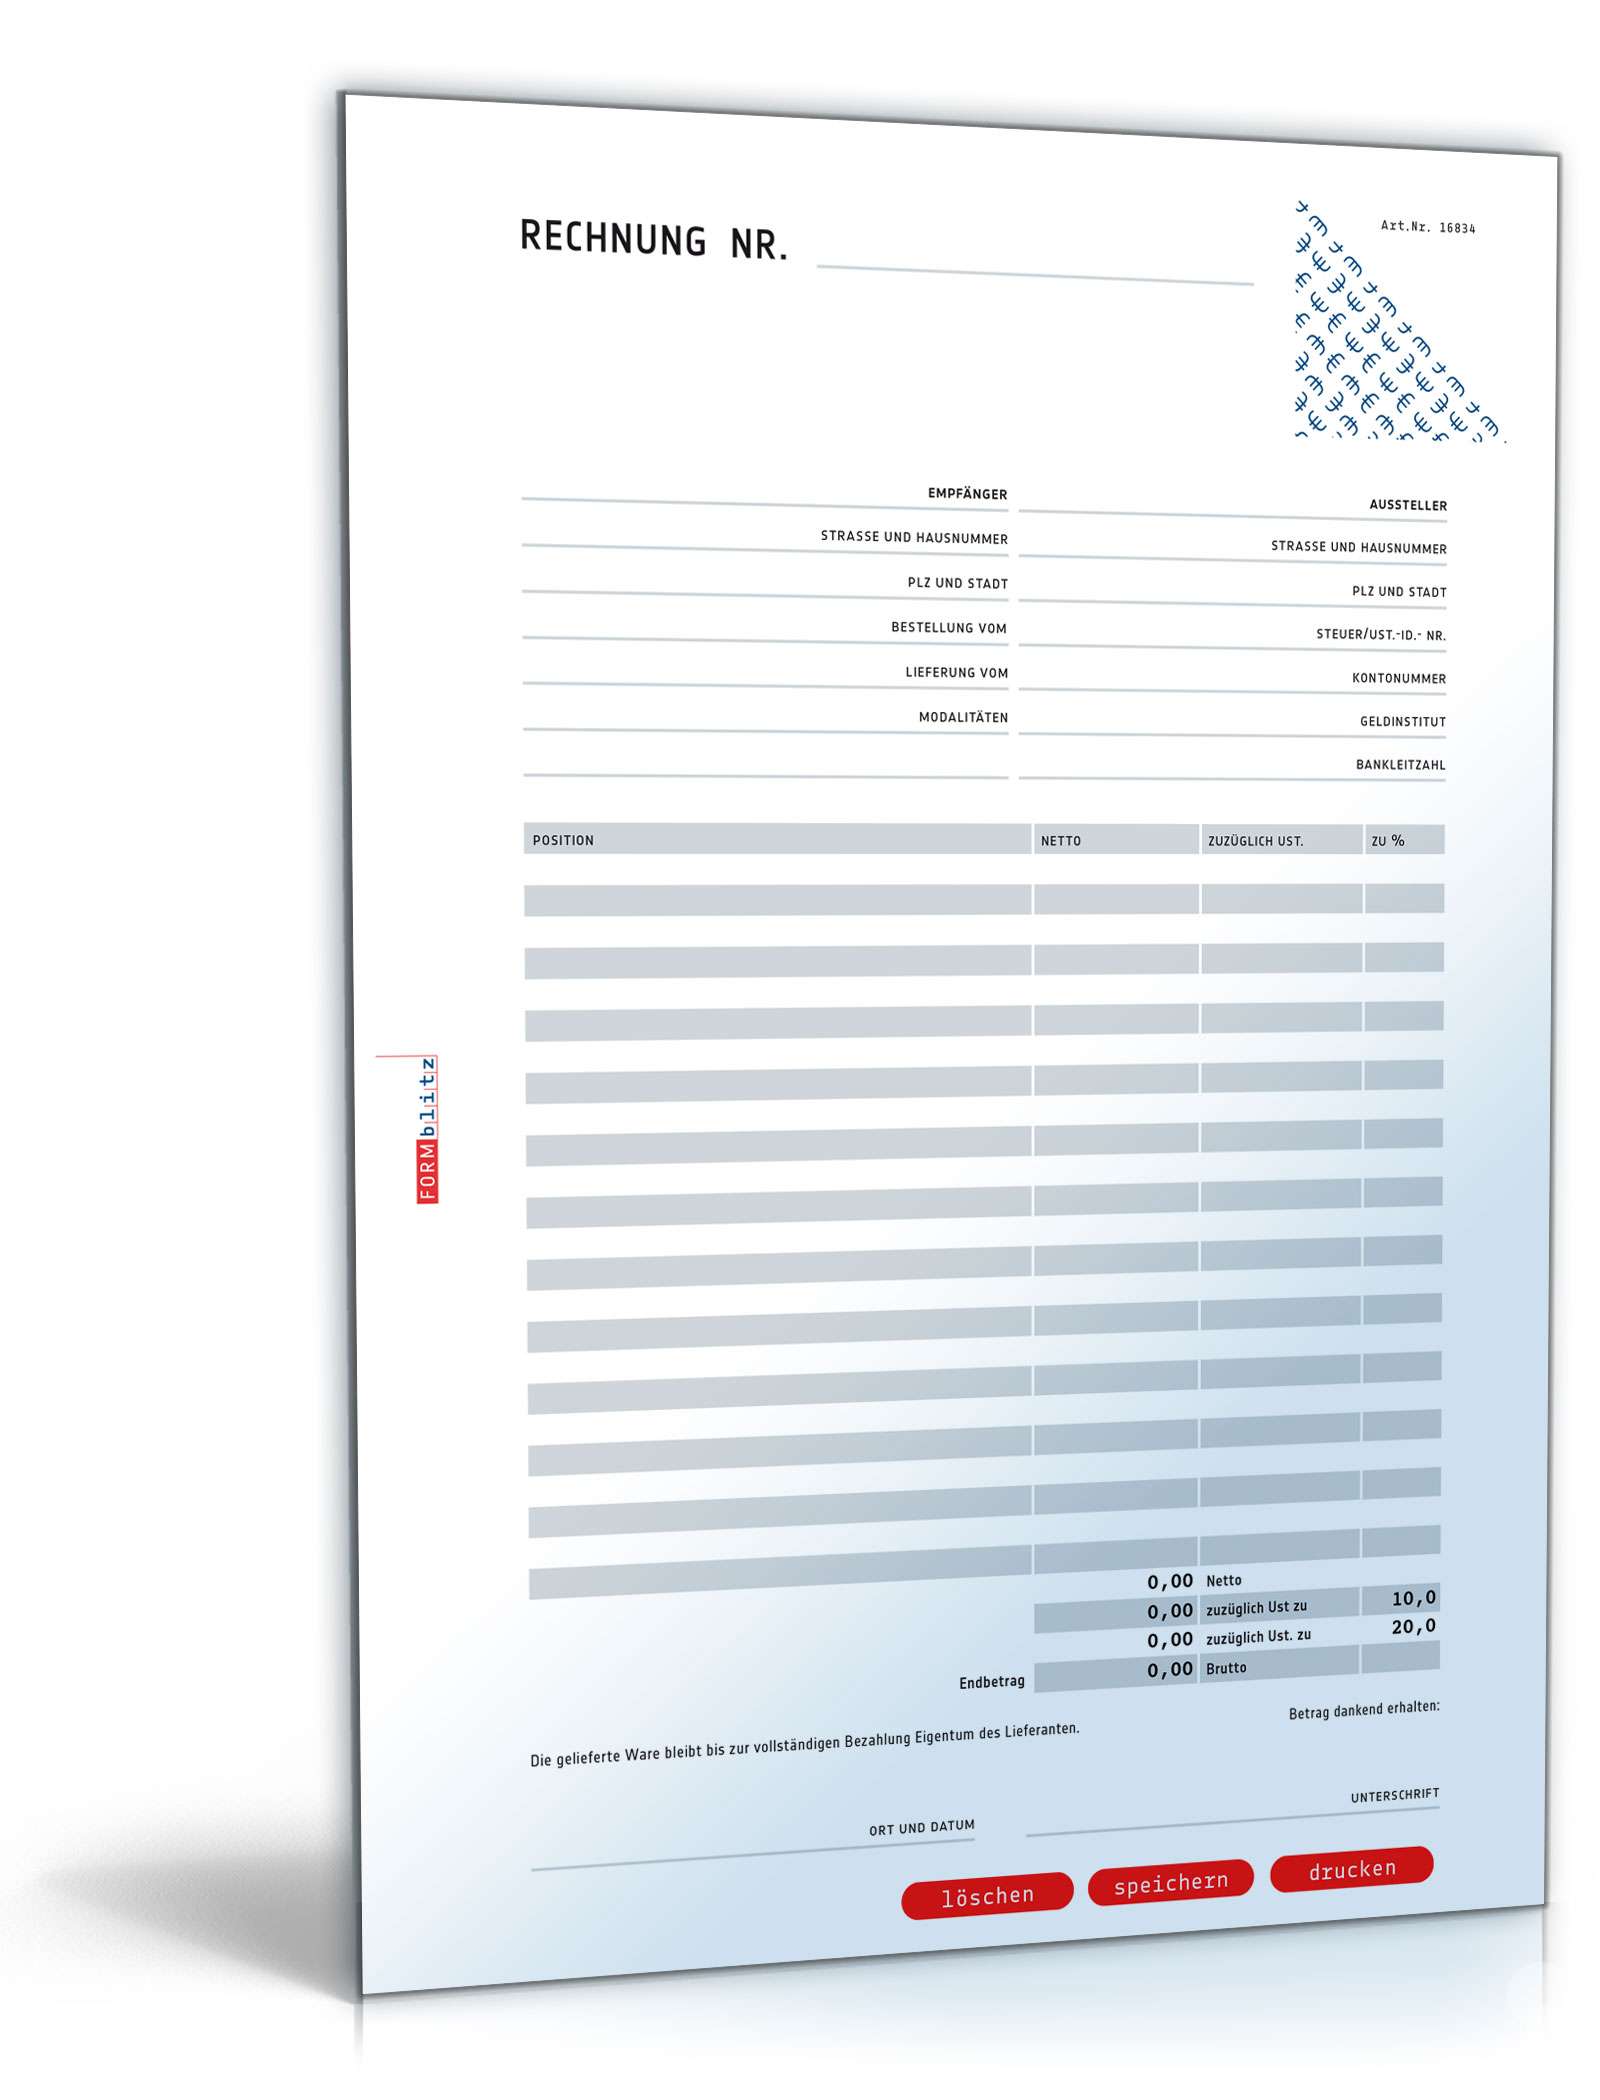 Hauptbild des Produkts: Rechnung netto (Addition und Variation der Umsatzsteuer)